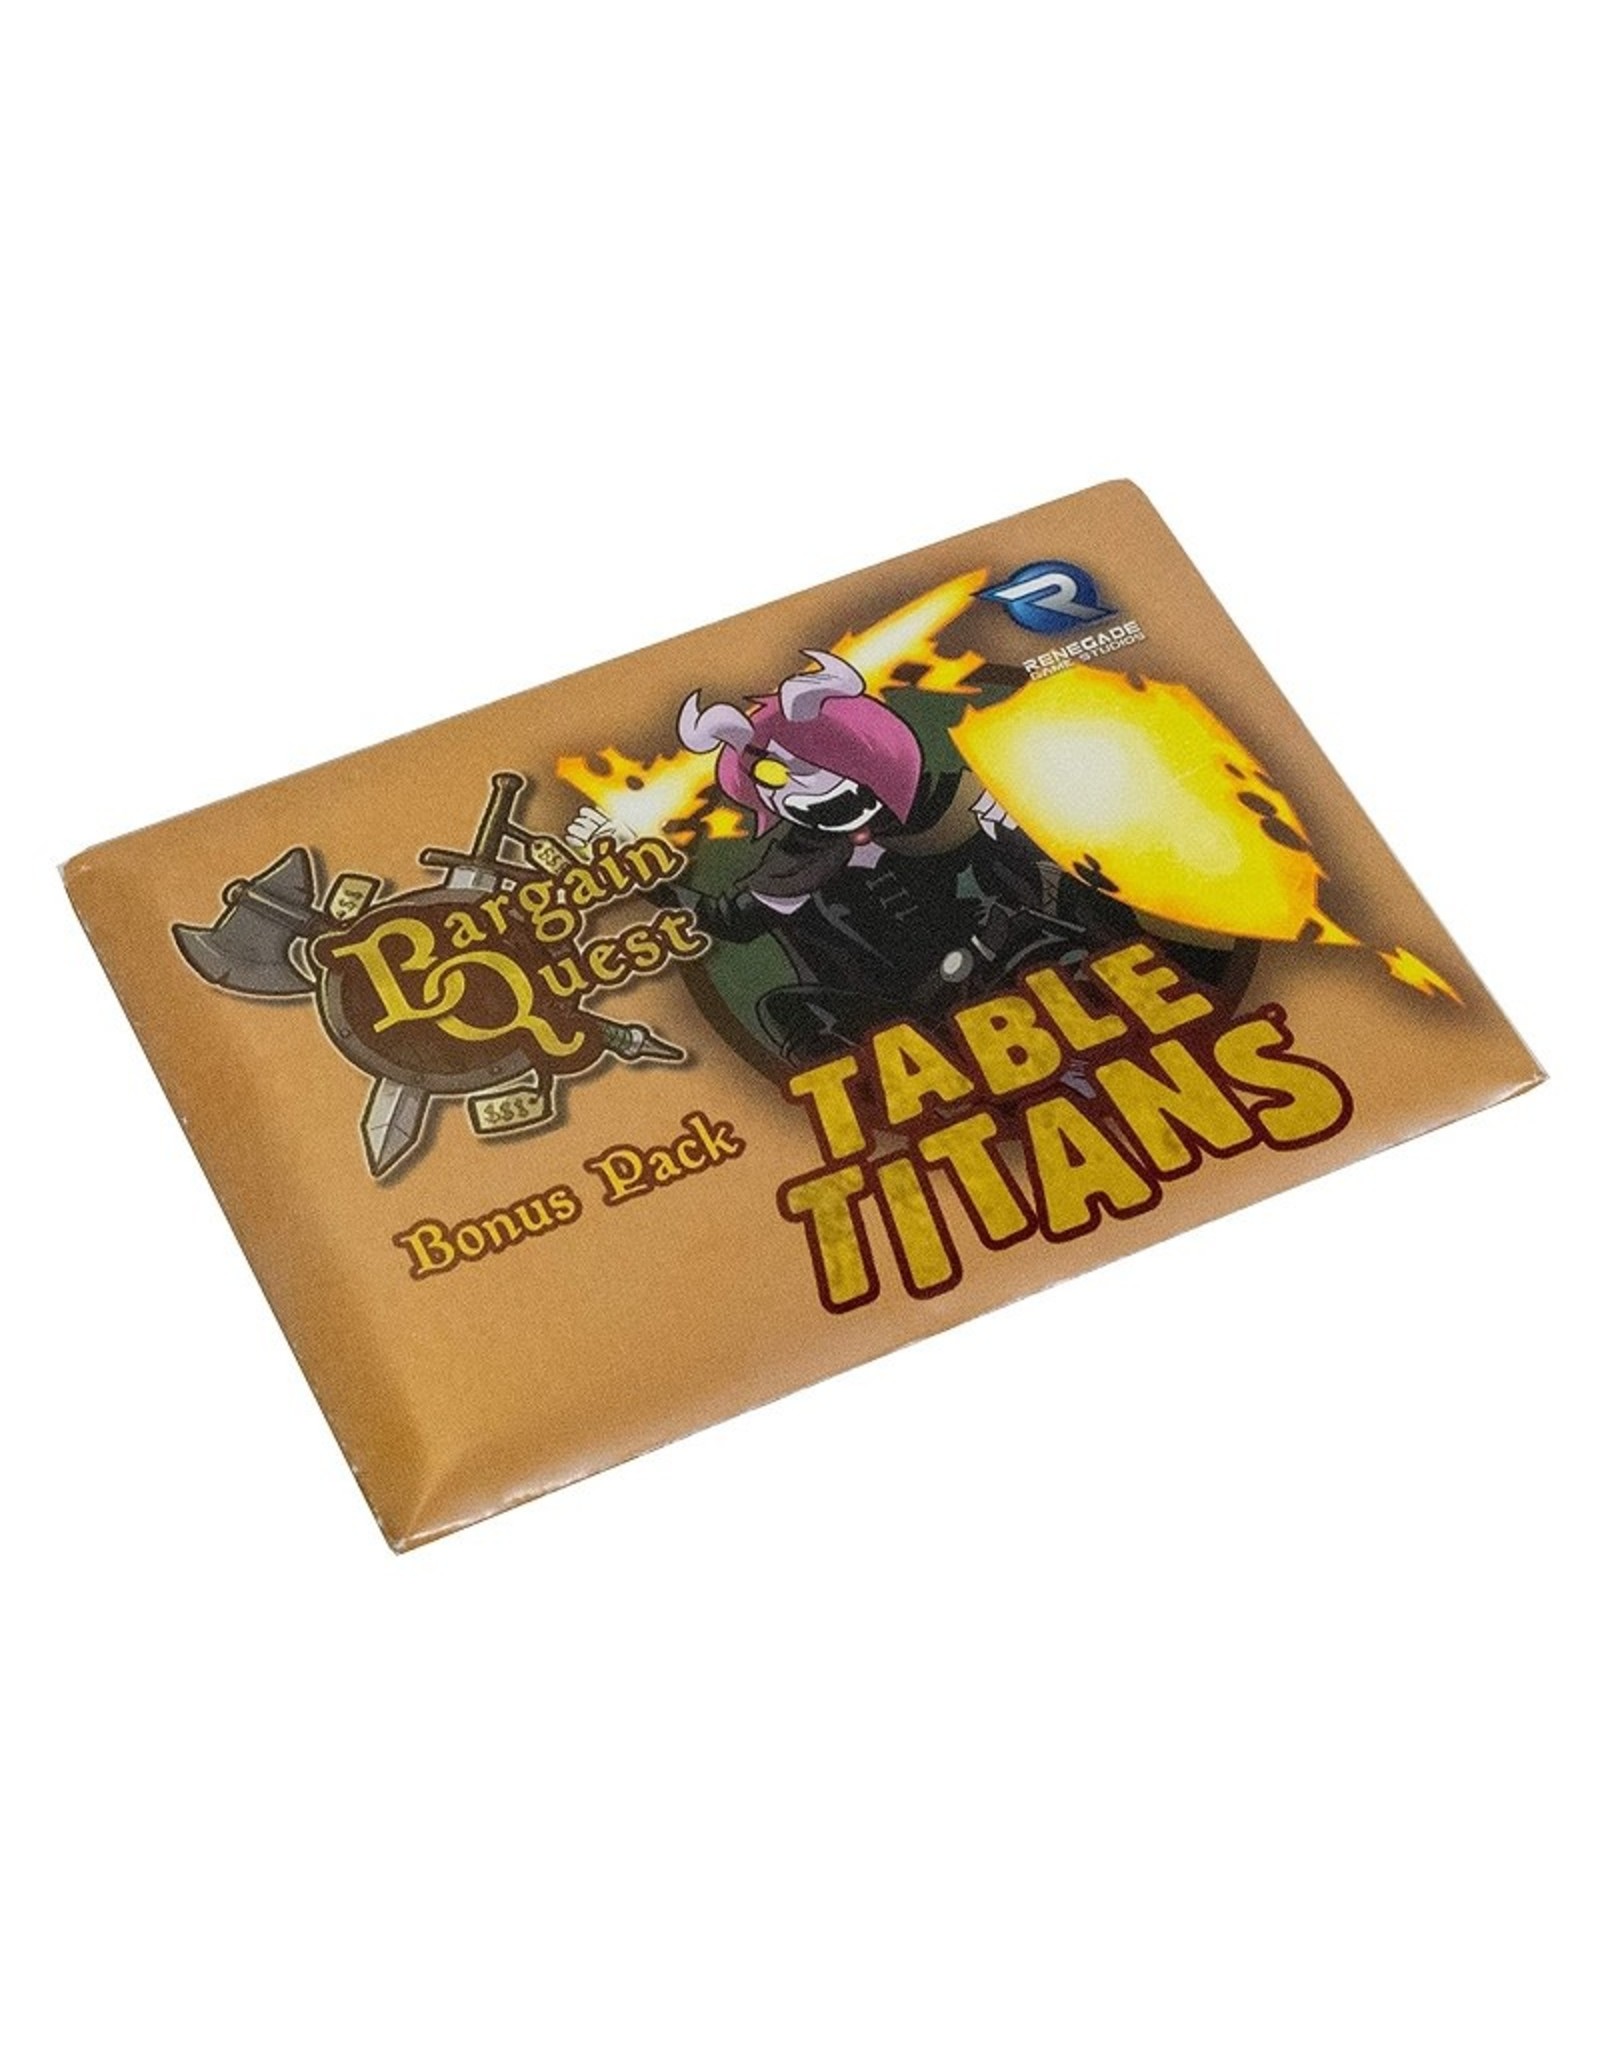 Bargain Quest (Bonus Pack - Table Titans)